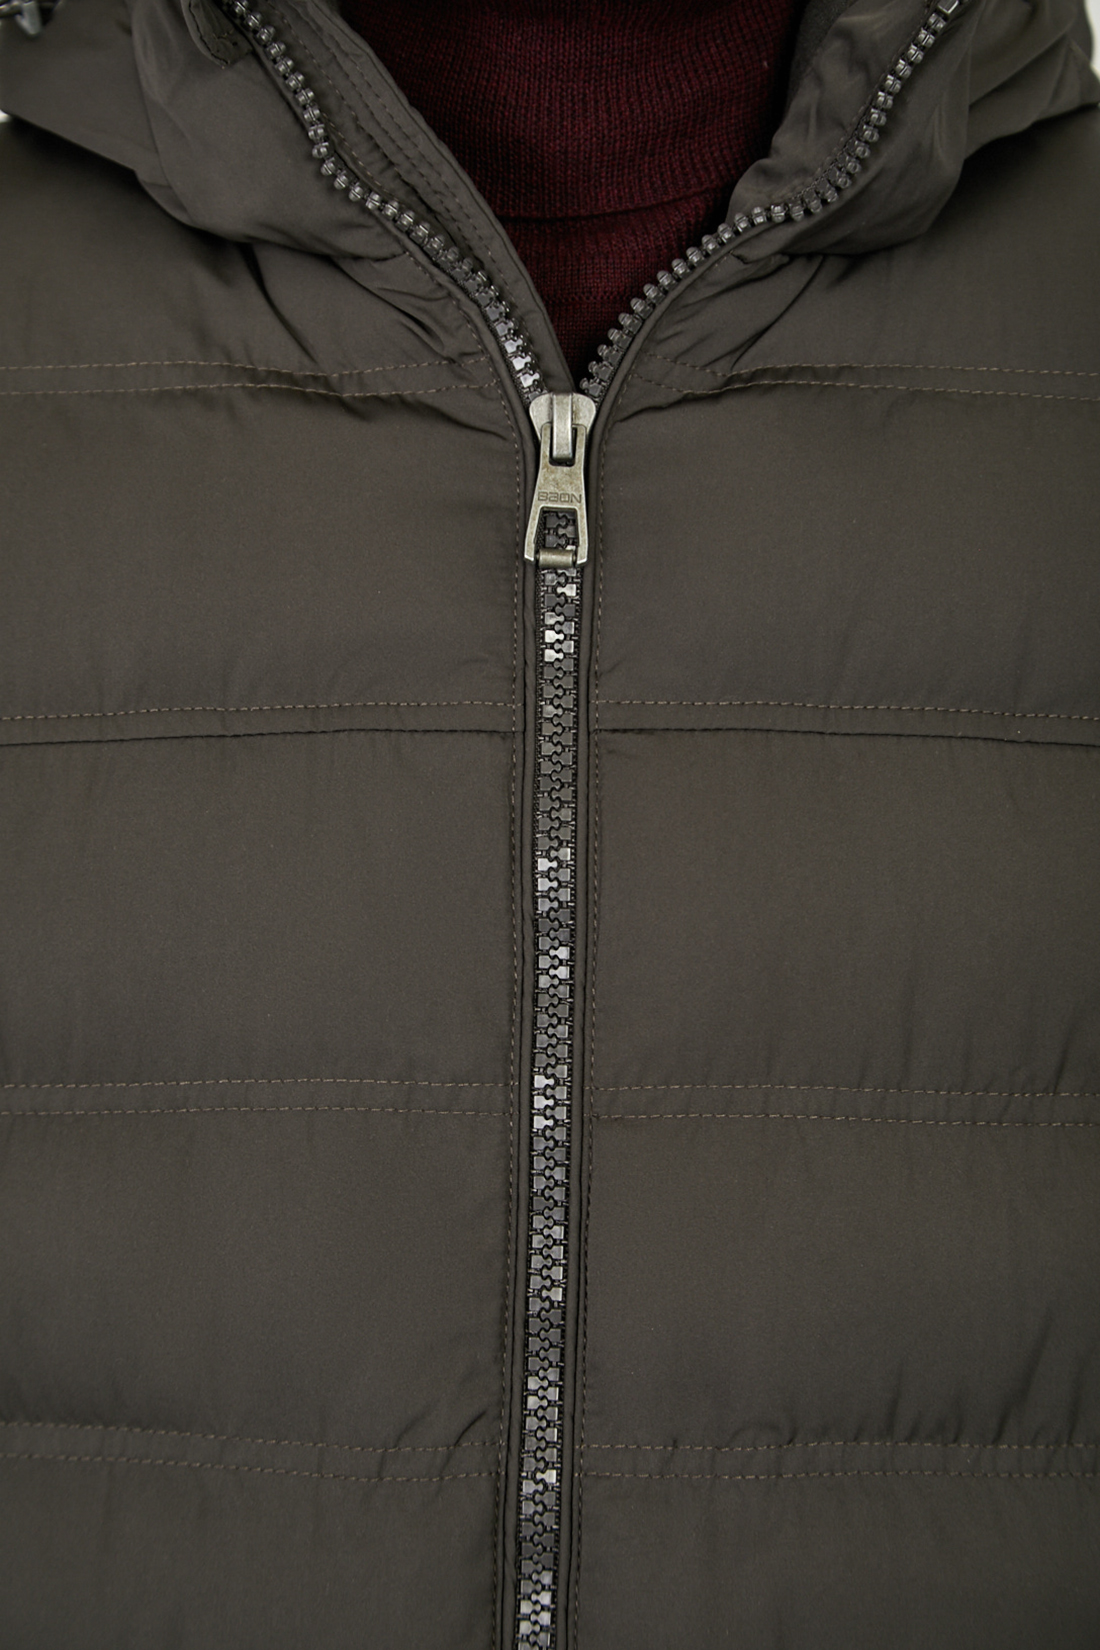 Куртка (Эко пух) (арт. baon B541502), размер M, цвет зеленый Куртка (Эко пух) (арт. baon B541502) - фото 2